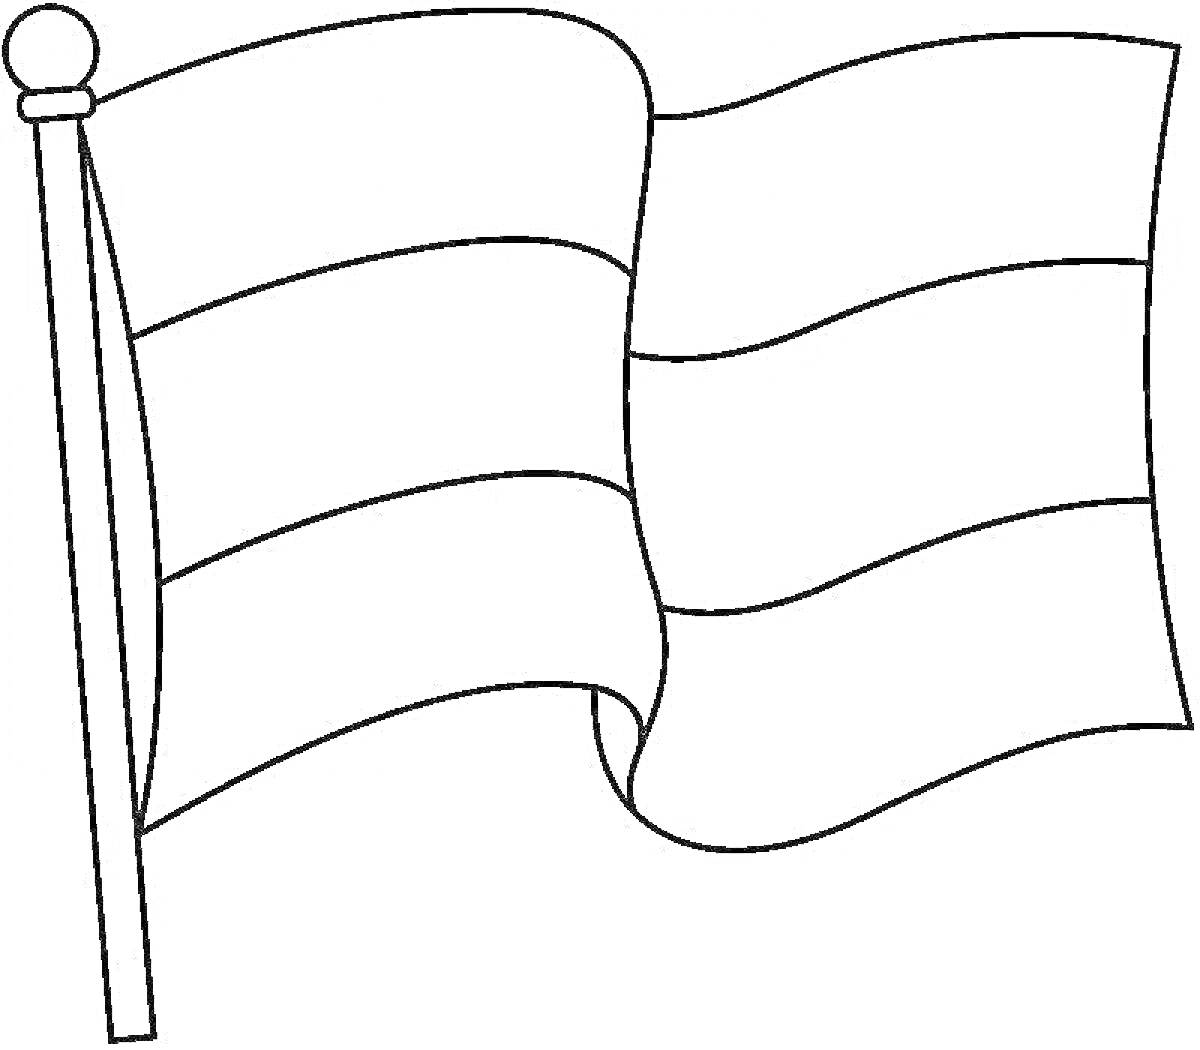 Раскраска волнистый флаг на шесте с четырьмя горизонтальными полосами